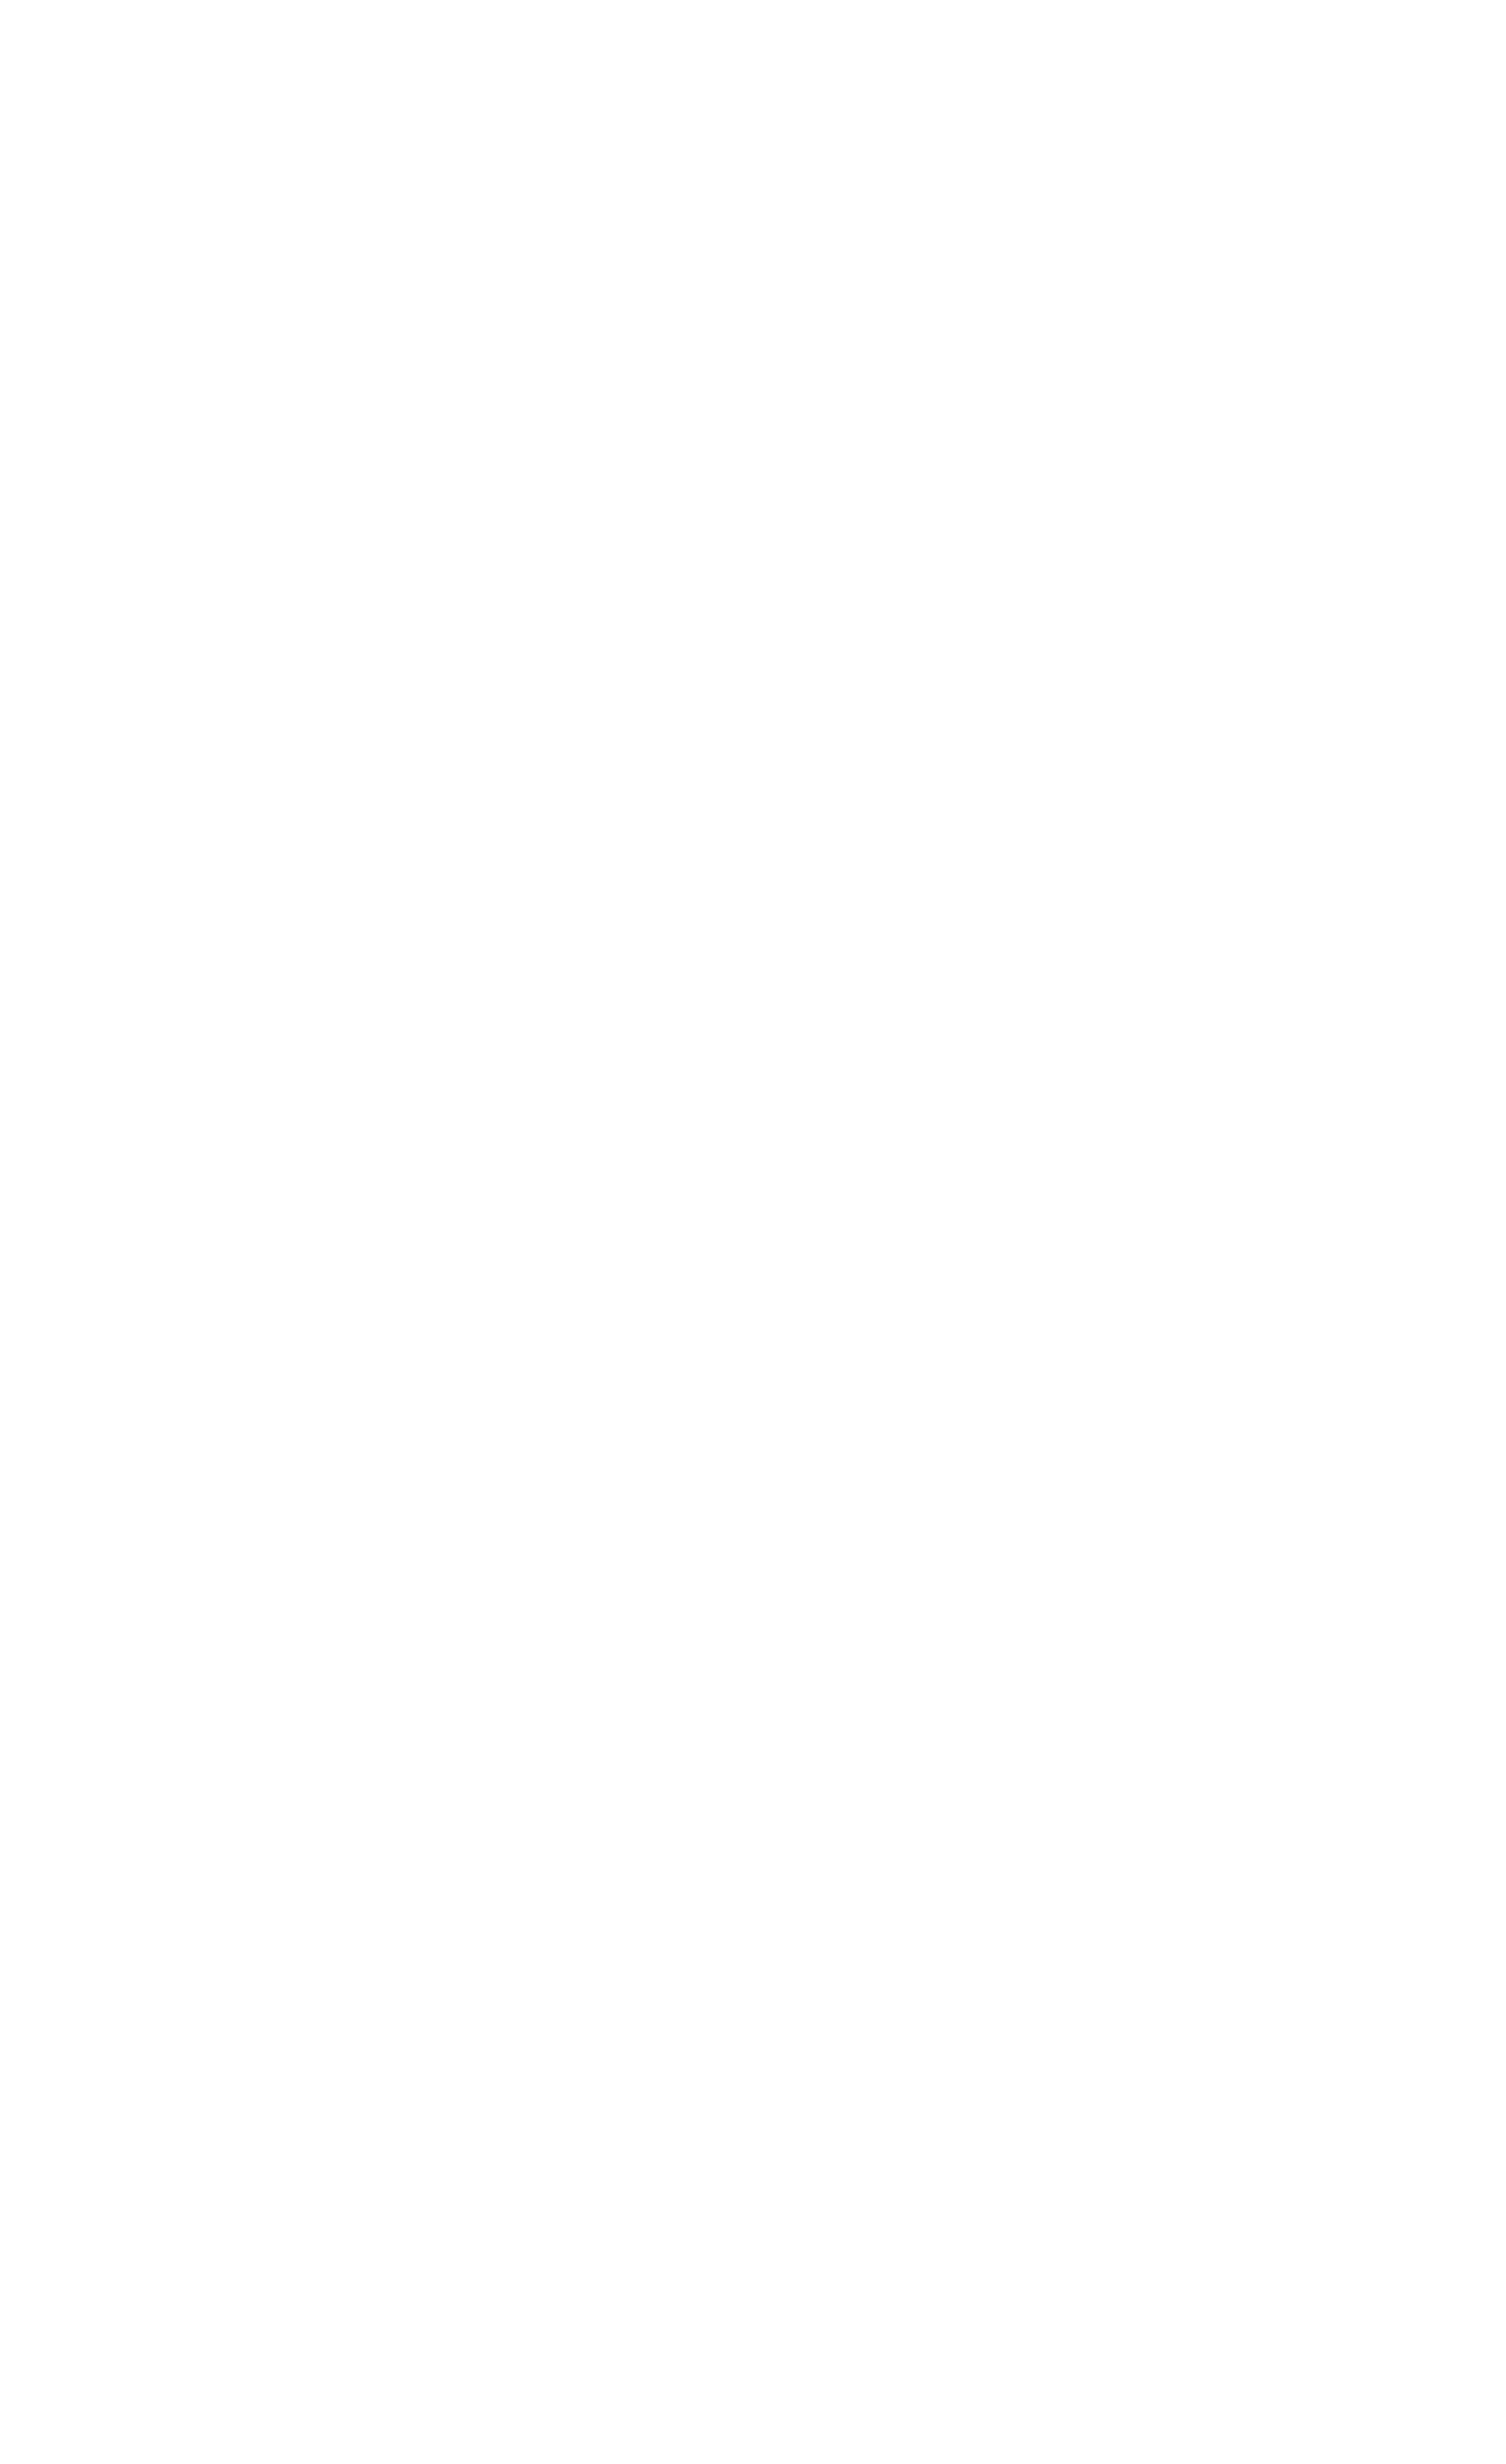 AUV Challenge